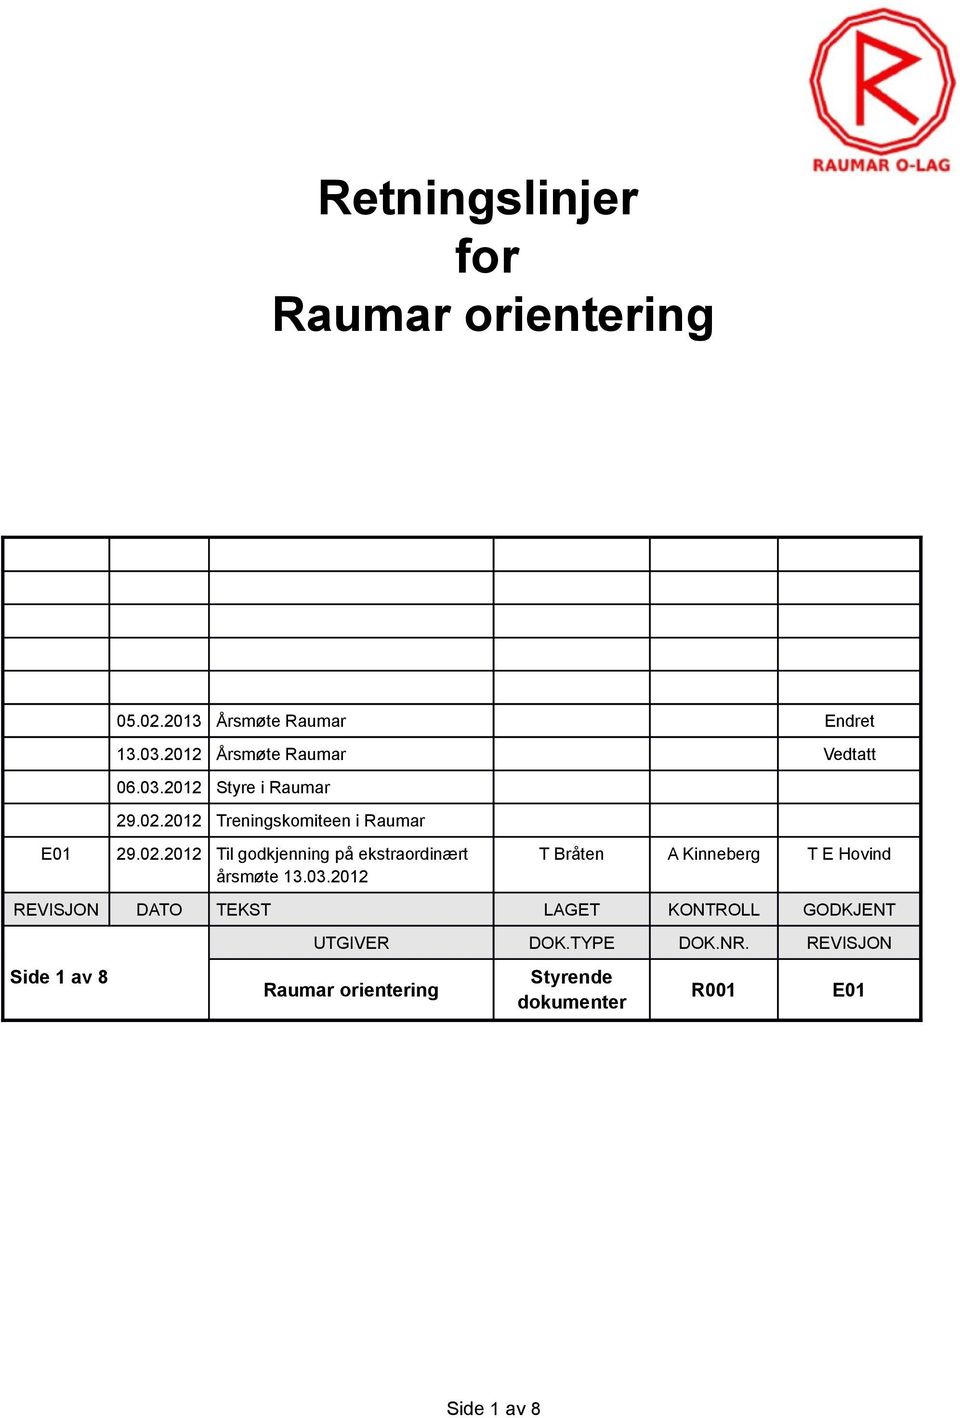 2012 Treningskomiteen i Raumar E01 29.02.2012 Til godkjenning på ekstraordinært årsmøte 13.03.